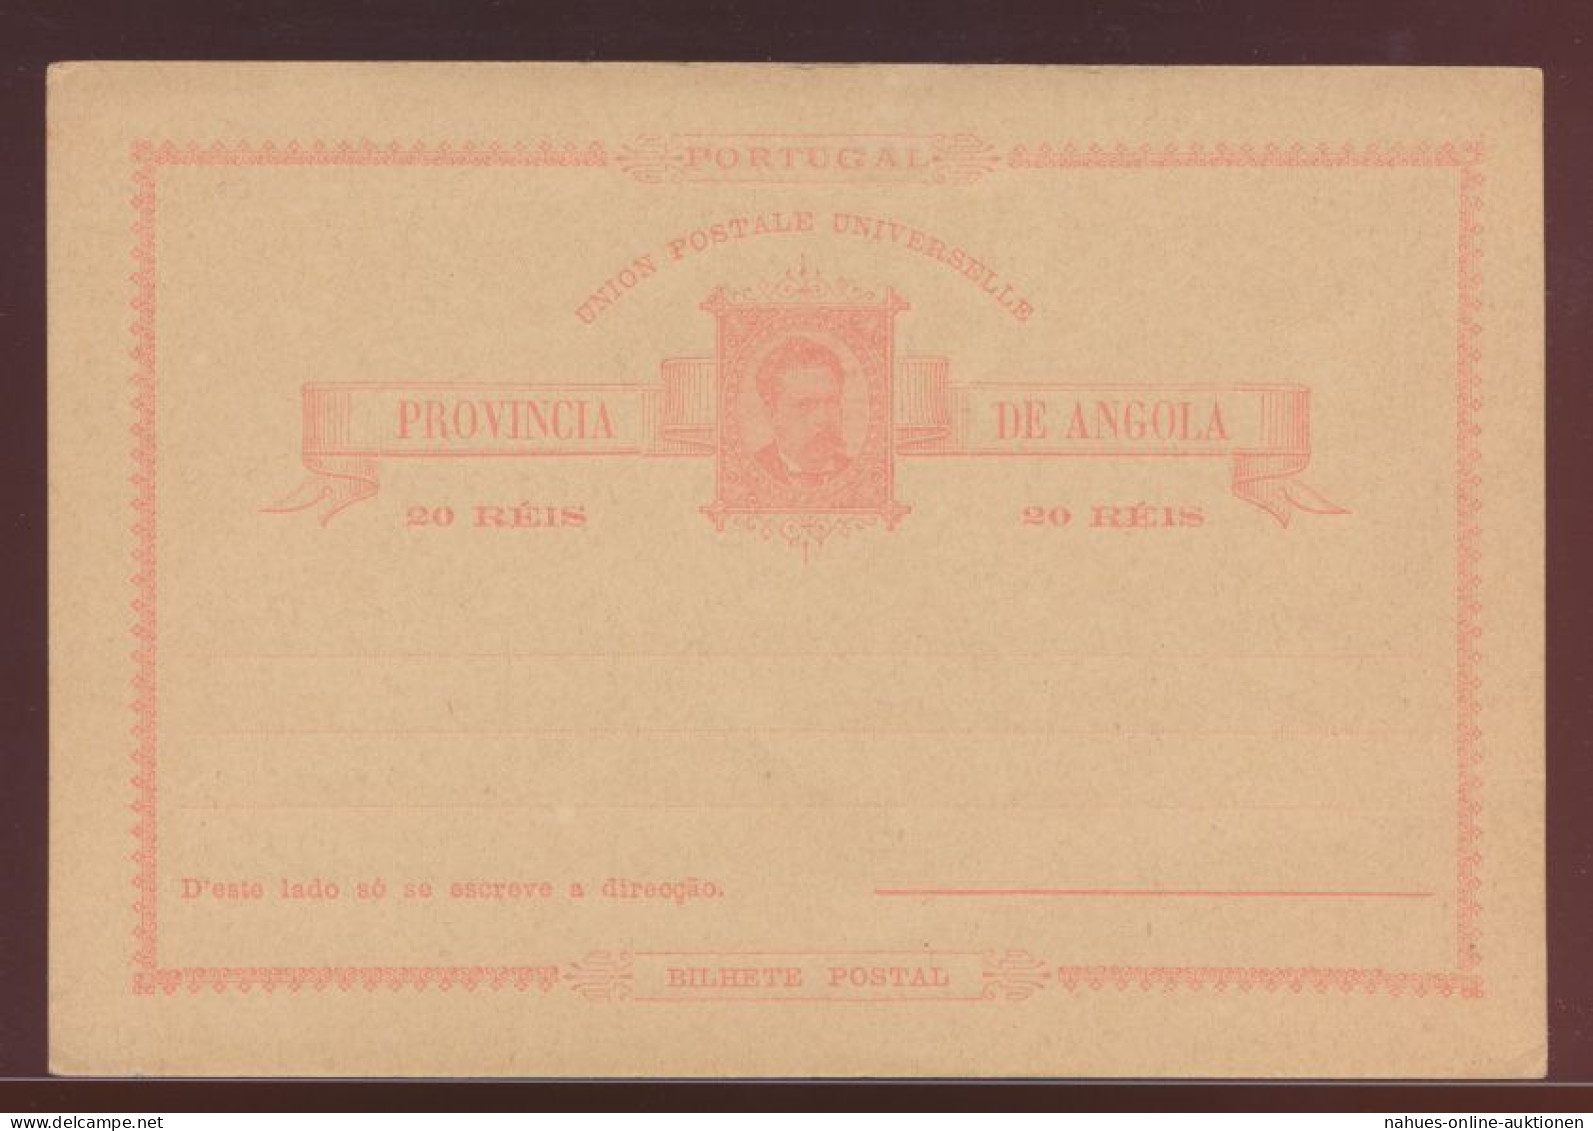 Angola Ganzsache 10 Reis Postal Stationery King Ludwig I - Angola